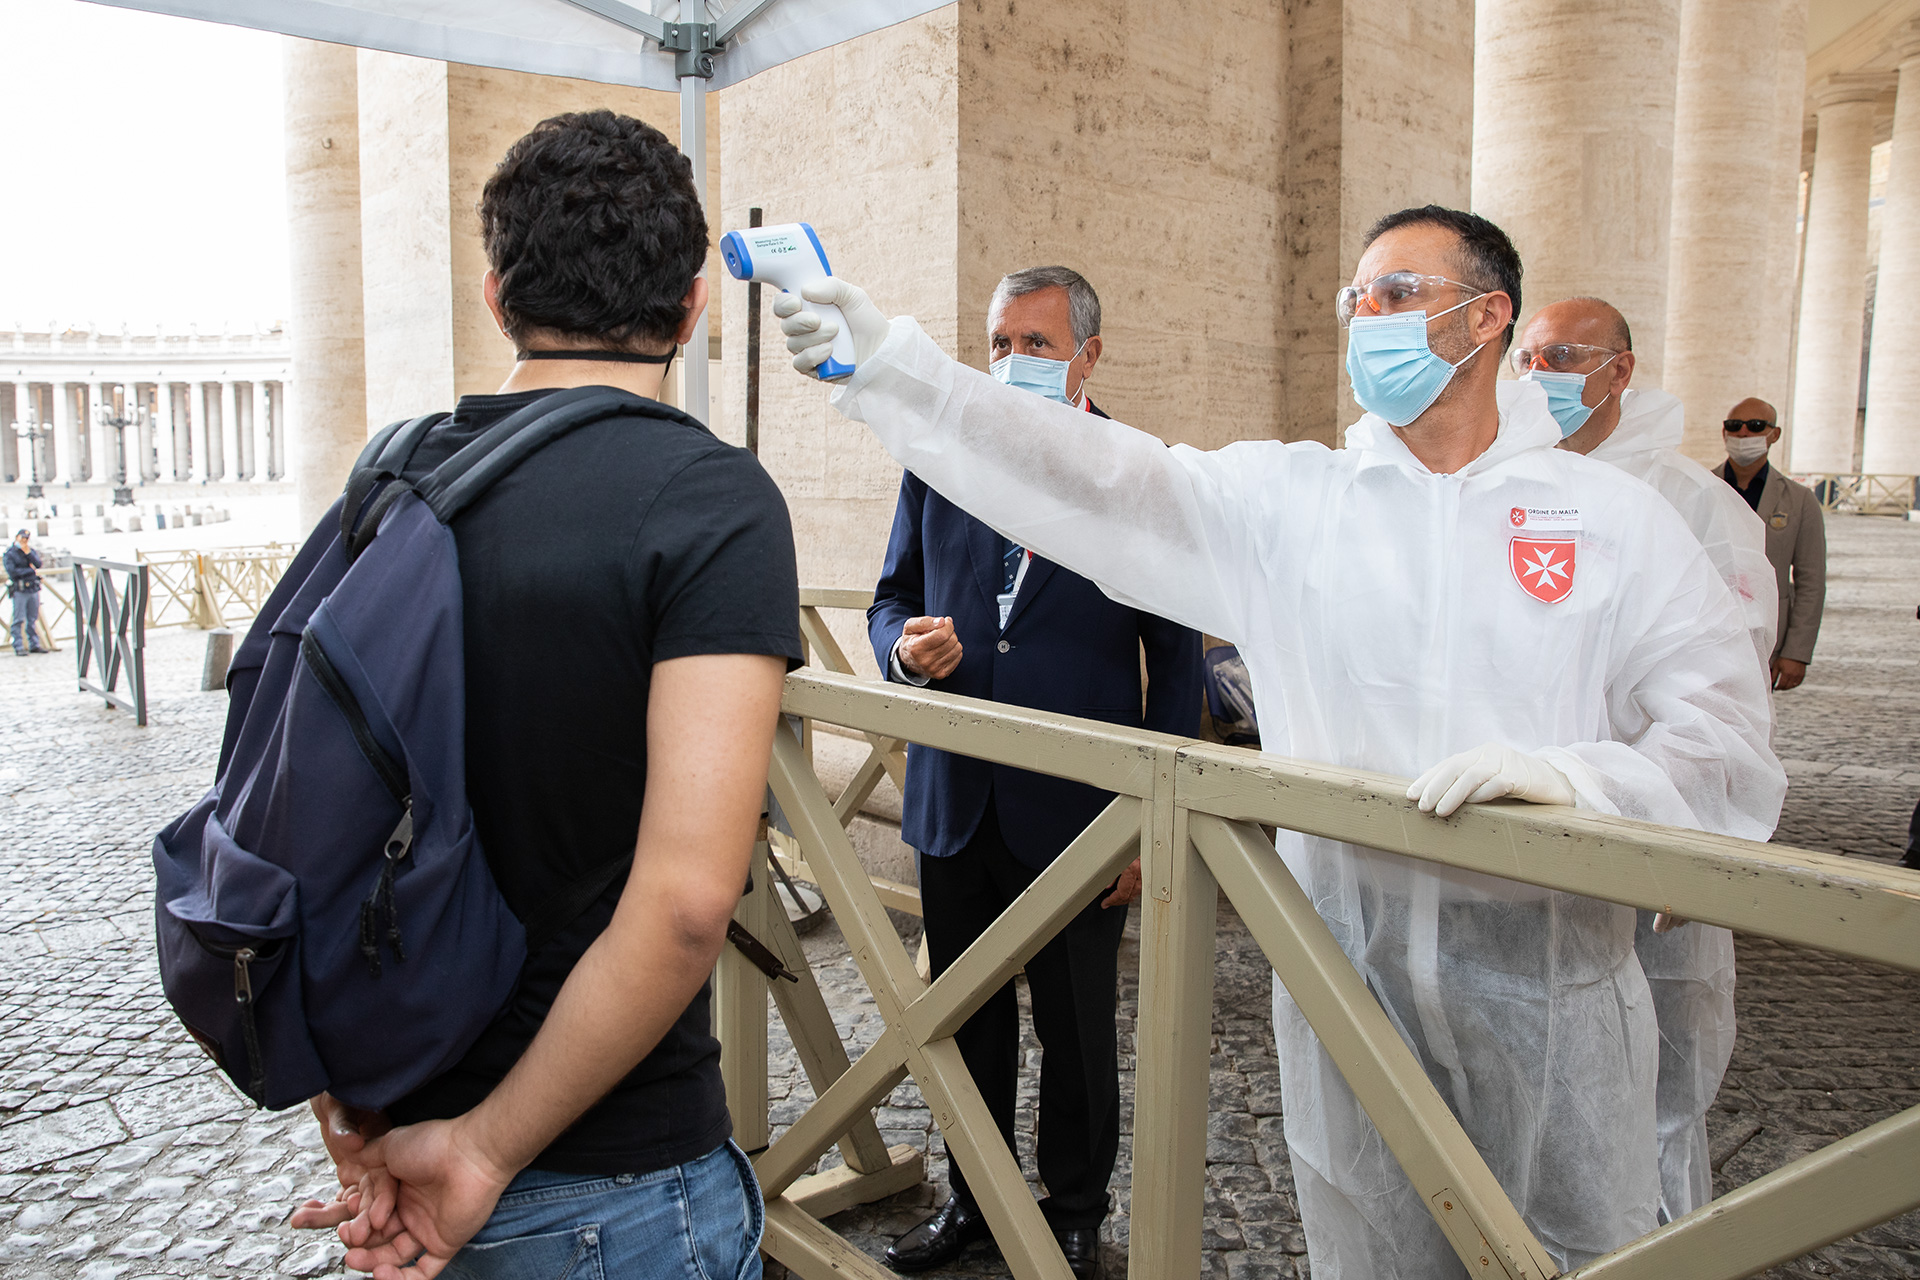 Riapre la Basilica di San Pietro: i volontari dell’Ordine di Malta impegnati nei controlli sanitari